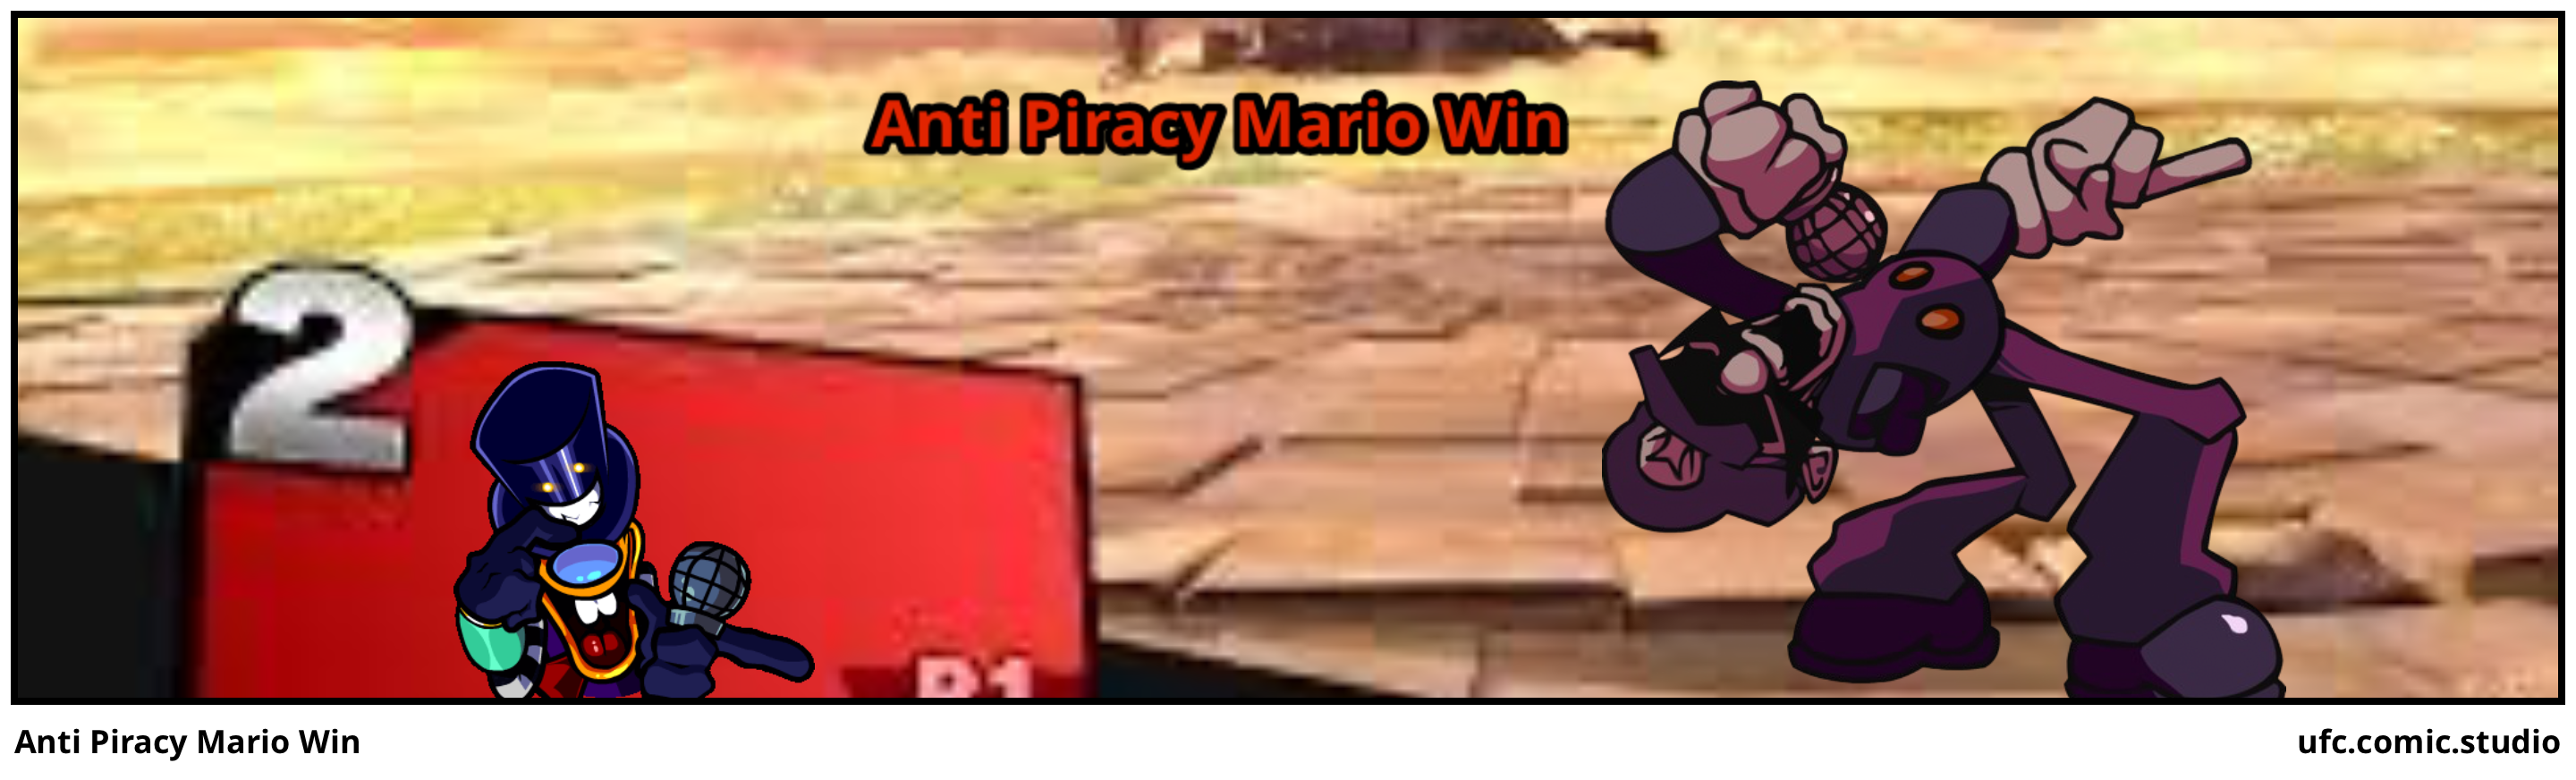 Anti Piracy Mario Win